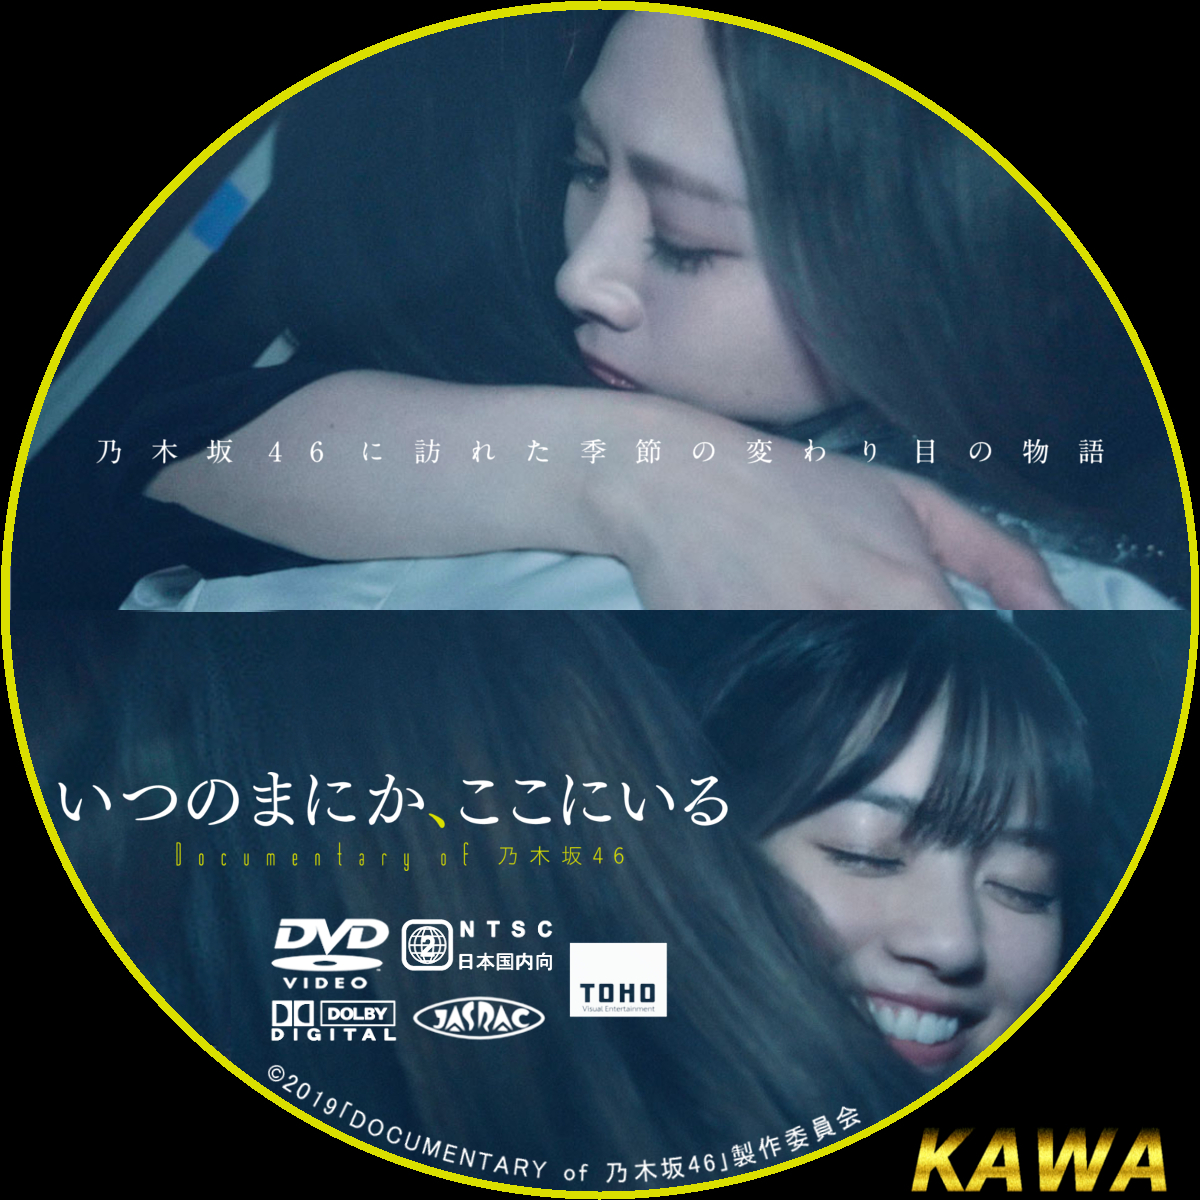 乃木坂46 いつのまにか、ここにいる DVDコンプリートBOX - kktspineuae.com